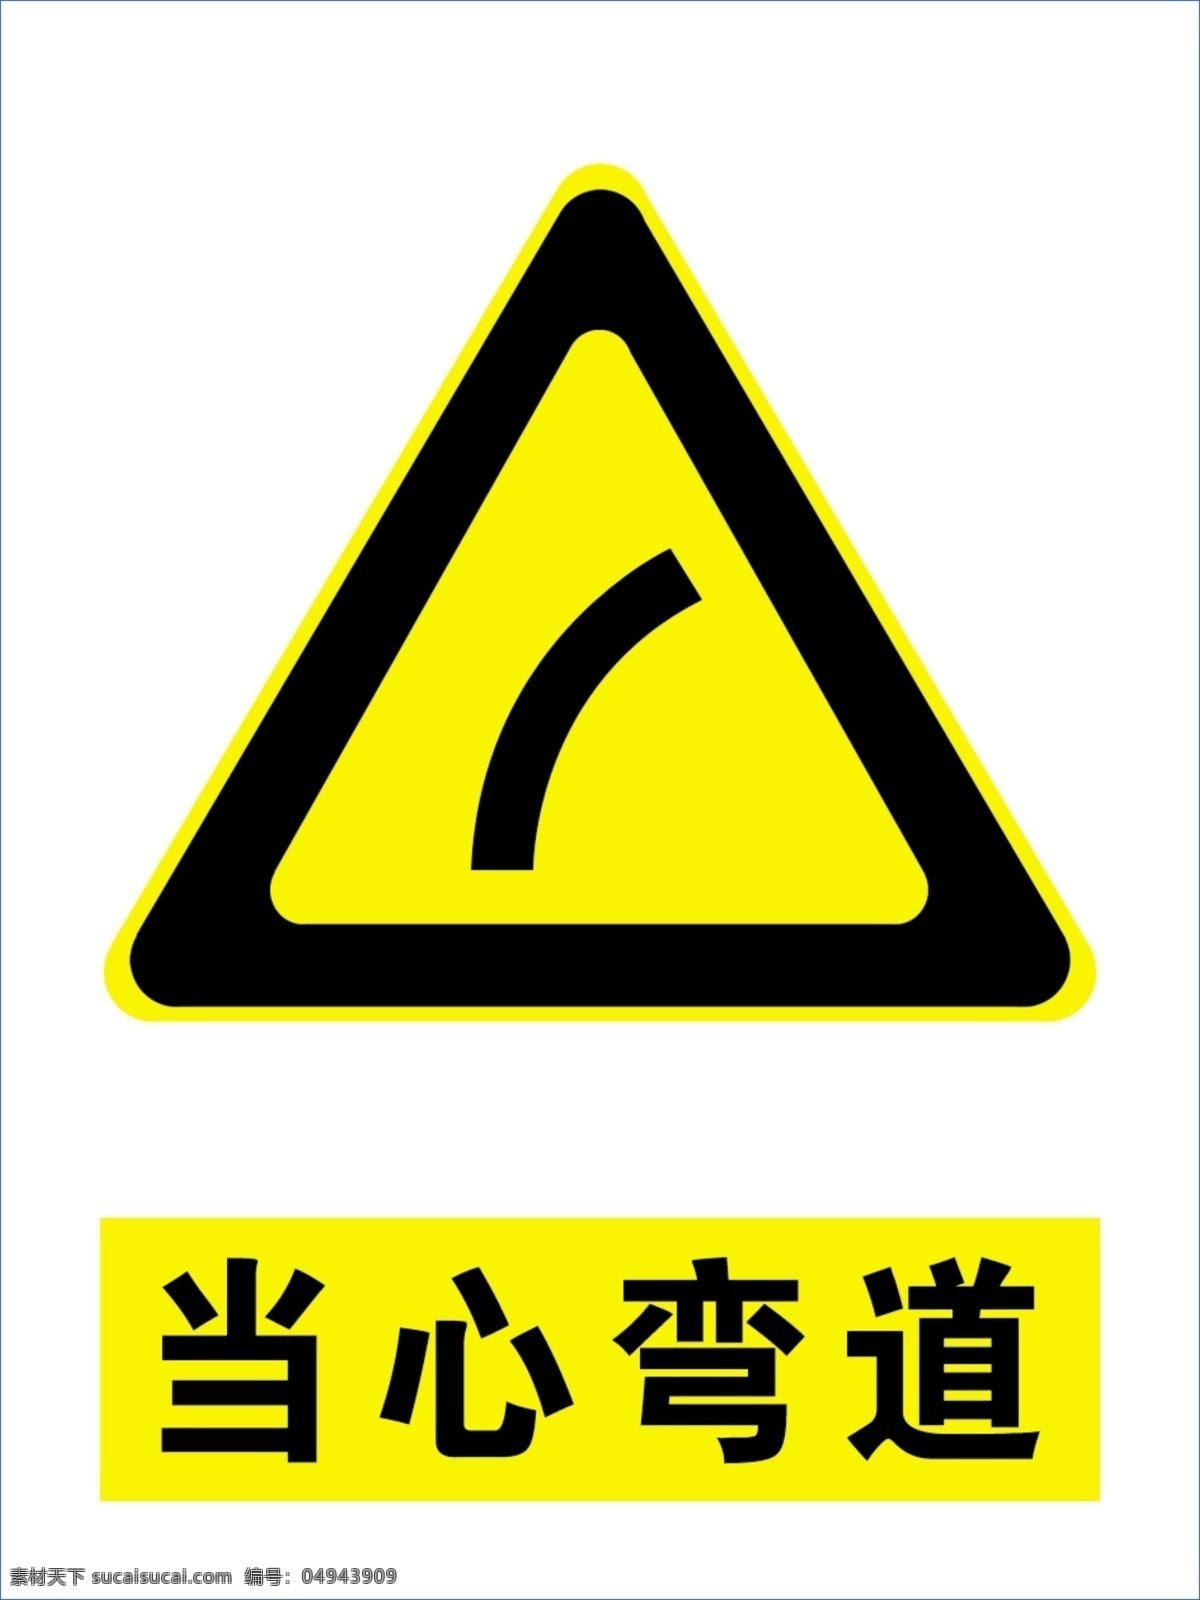 当心弯道 安全标示 安全 标示 标志 道路 标志图标 公共标识标志